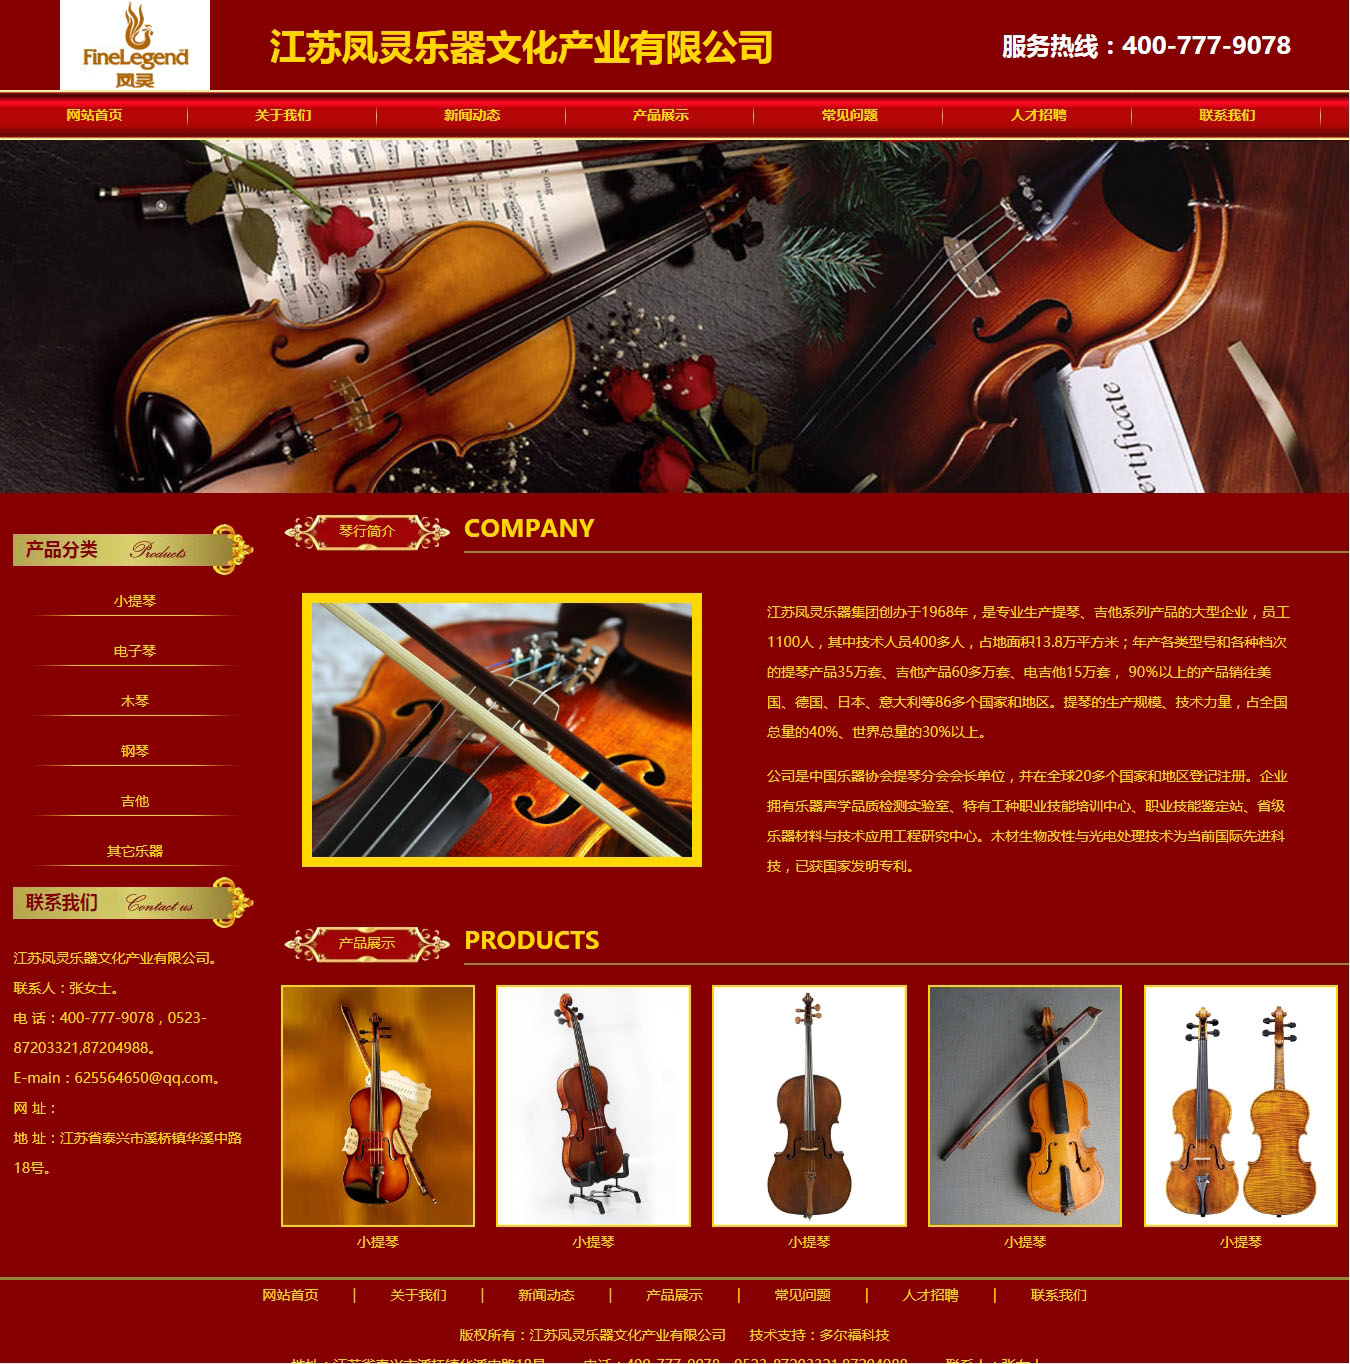 江蘇鳳靈樂器文化產業有限公司